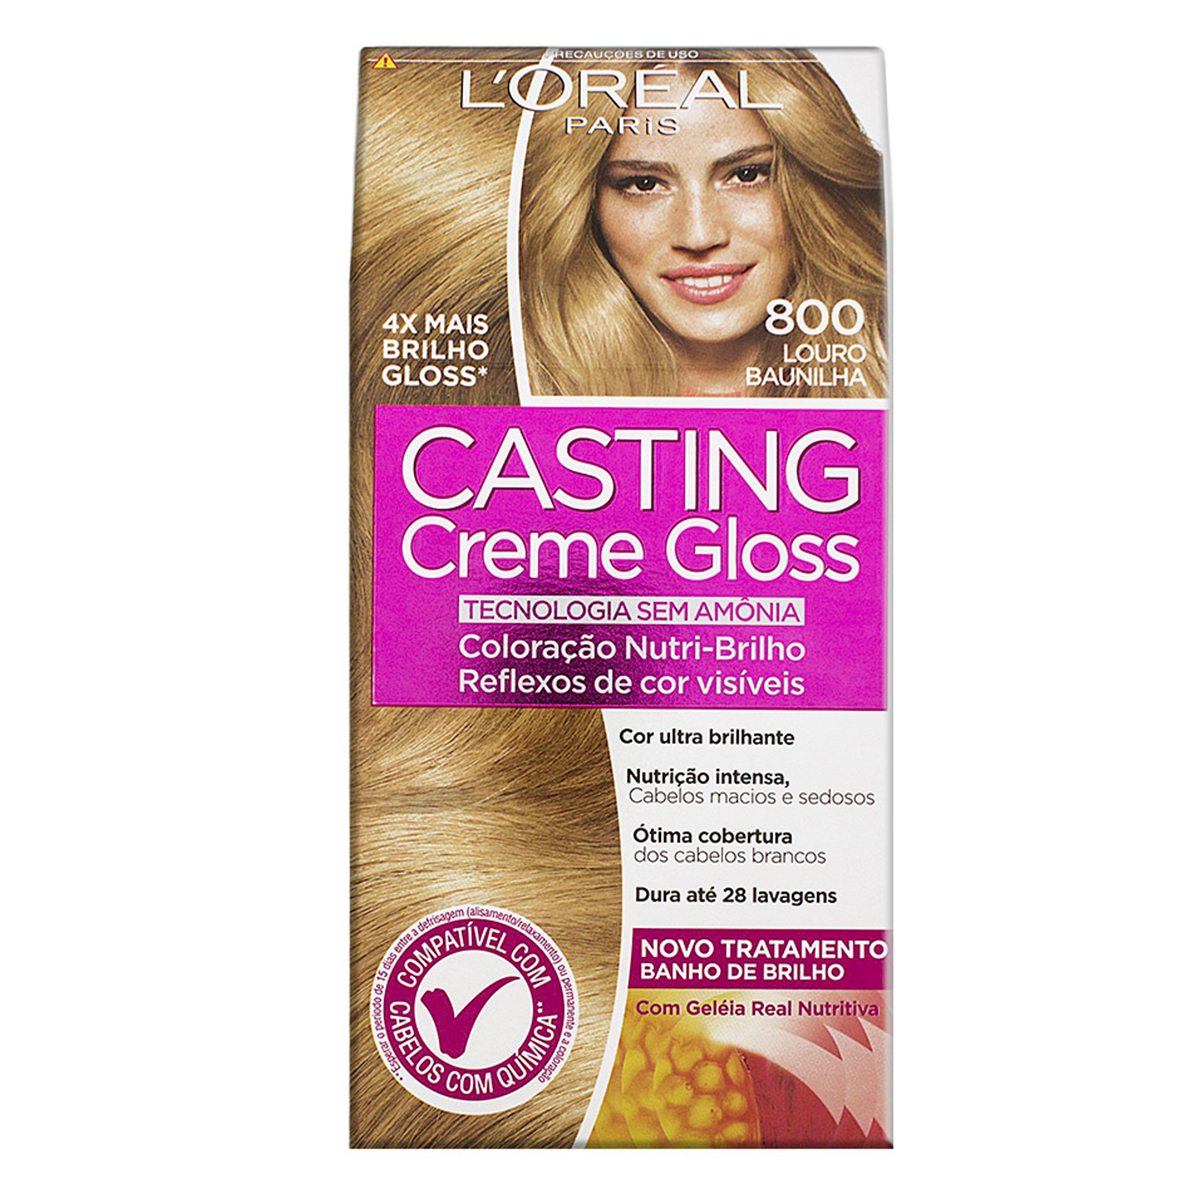 Coloração Permanente Casting Creme Gloss N°800 Louro Baunilha L'Oréal 1 Unidade